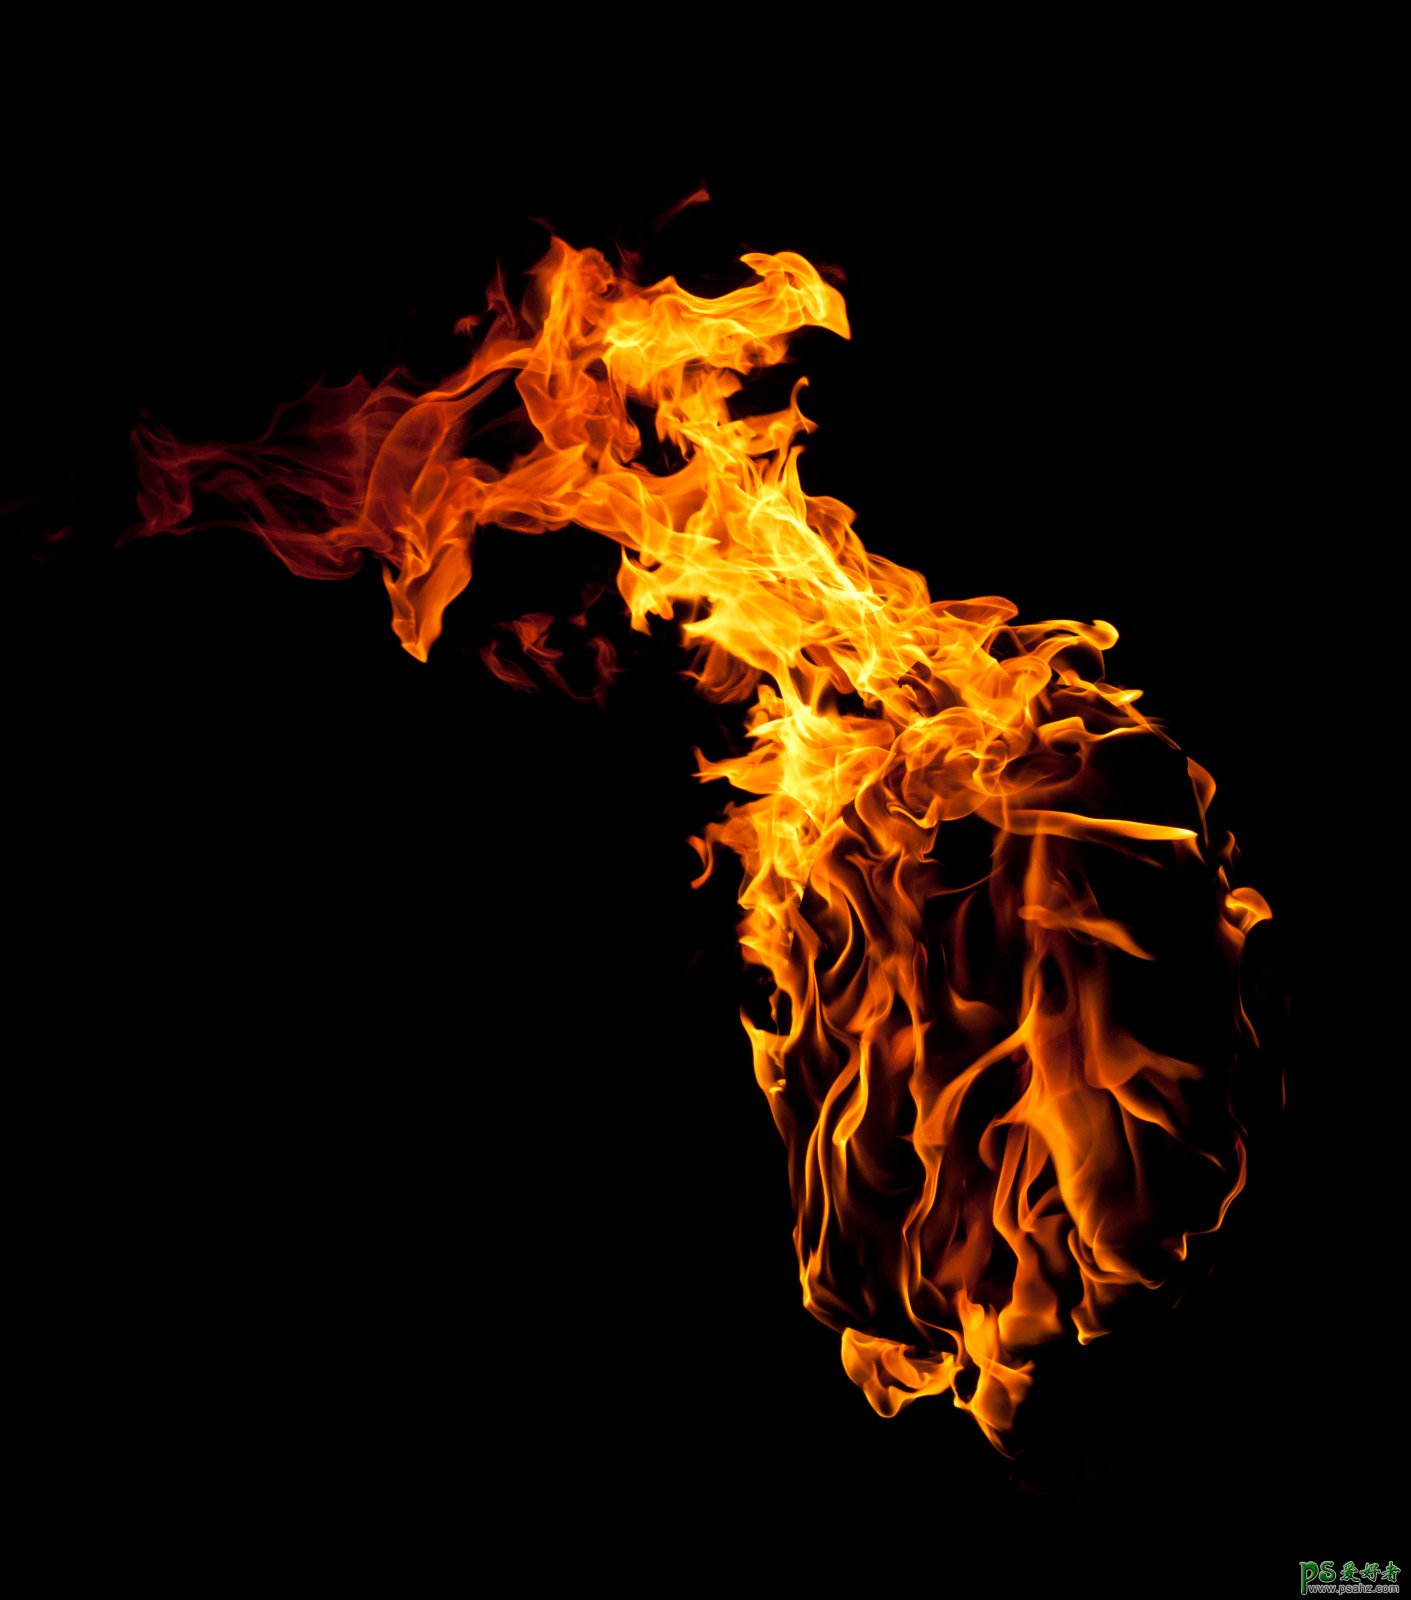 PS通道抠图教程：快速抠出燃烧的火焰素材图，把火焰与背景分离。